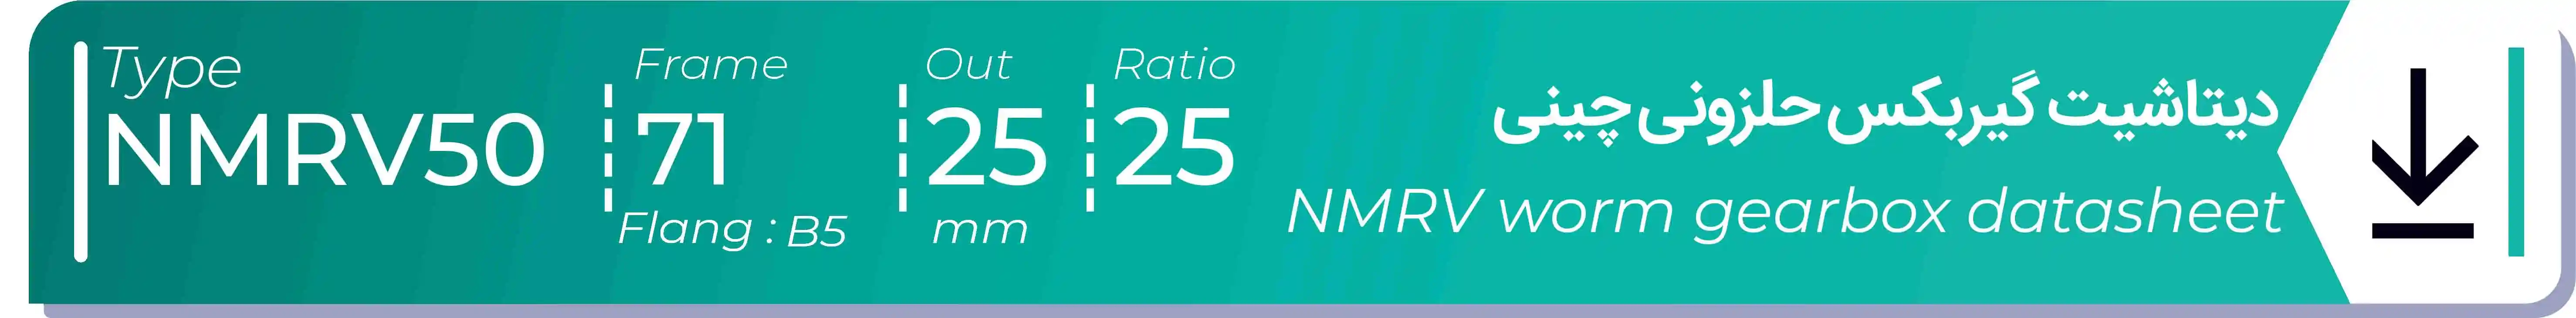  دیتاشیت و مشخصات فنی گیربکس حلزونی چینی   NMRV50  -  با خروجی 25- میلی متر و نسبت25 و فریم 71